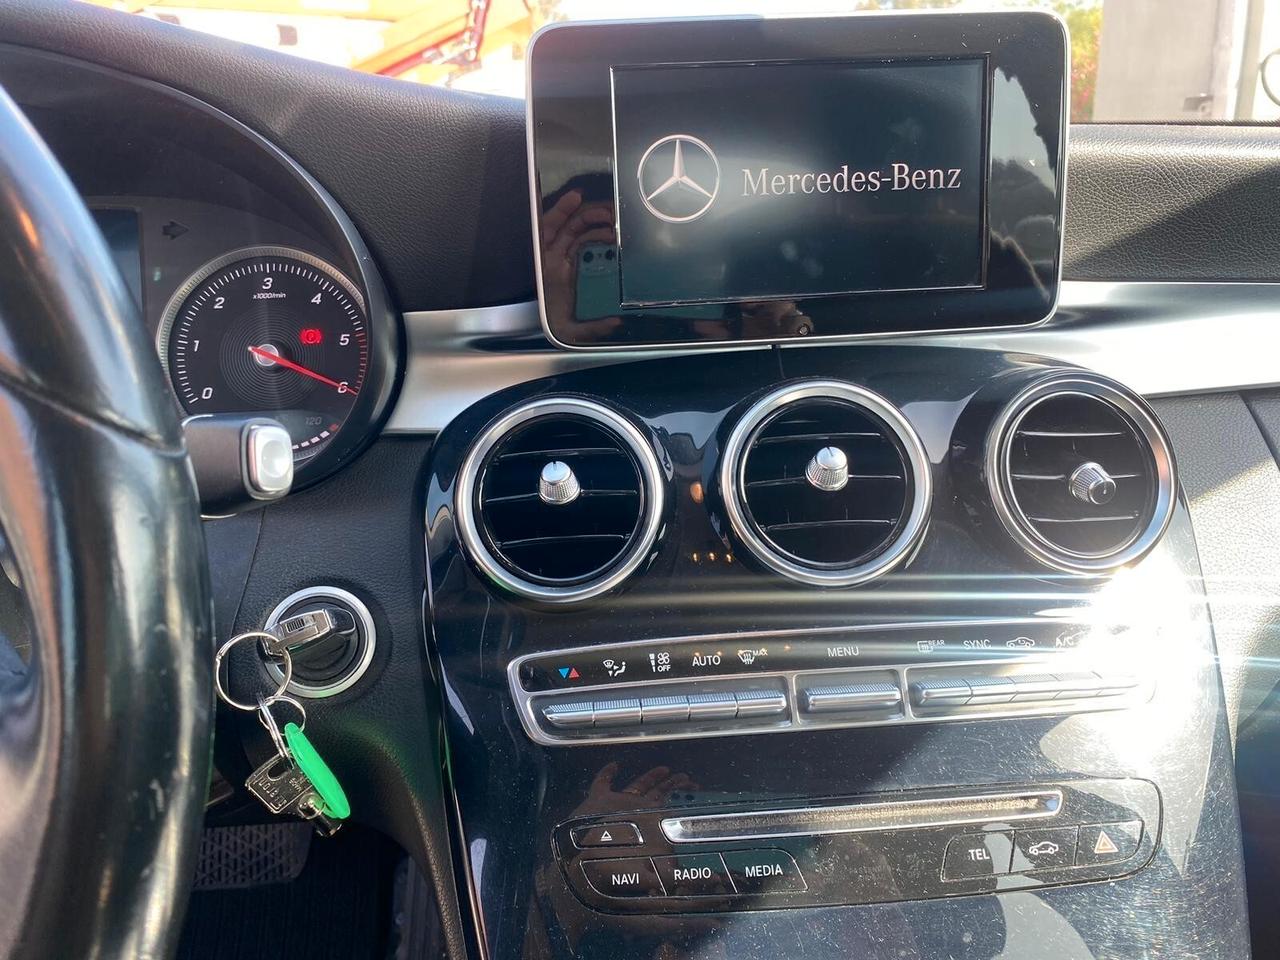 Mercedes-benz C 220 BlueTEC Automatic Premium vedi promo in descrizione